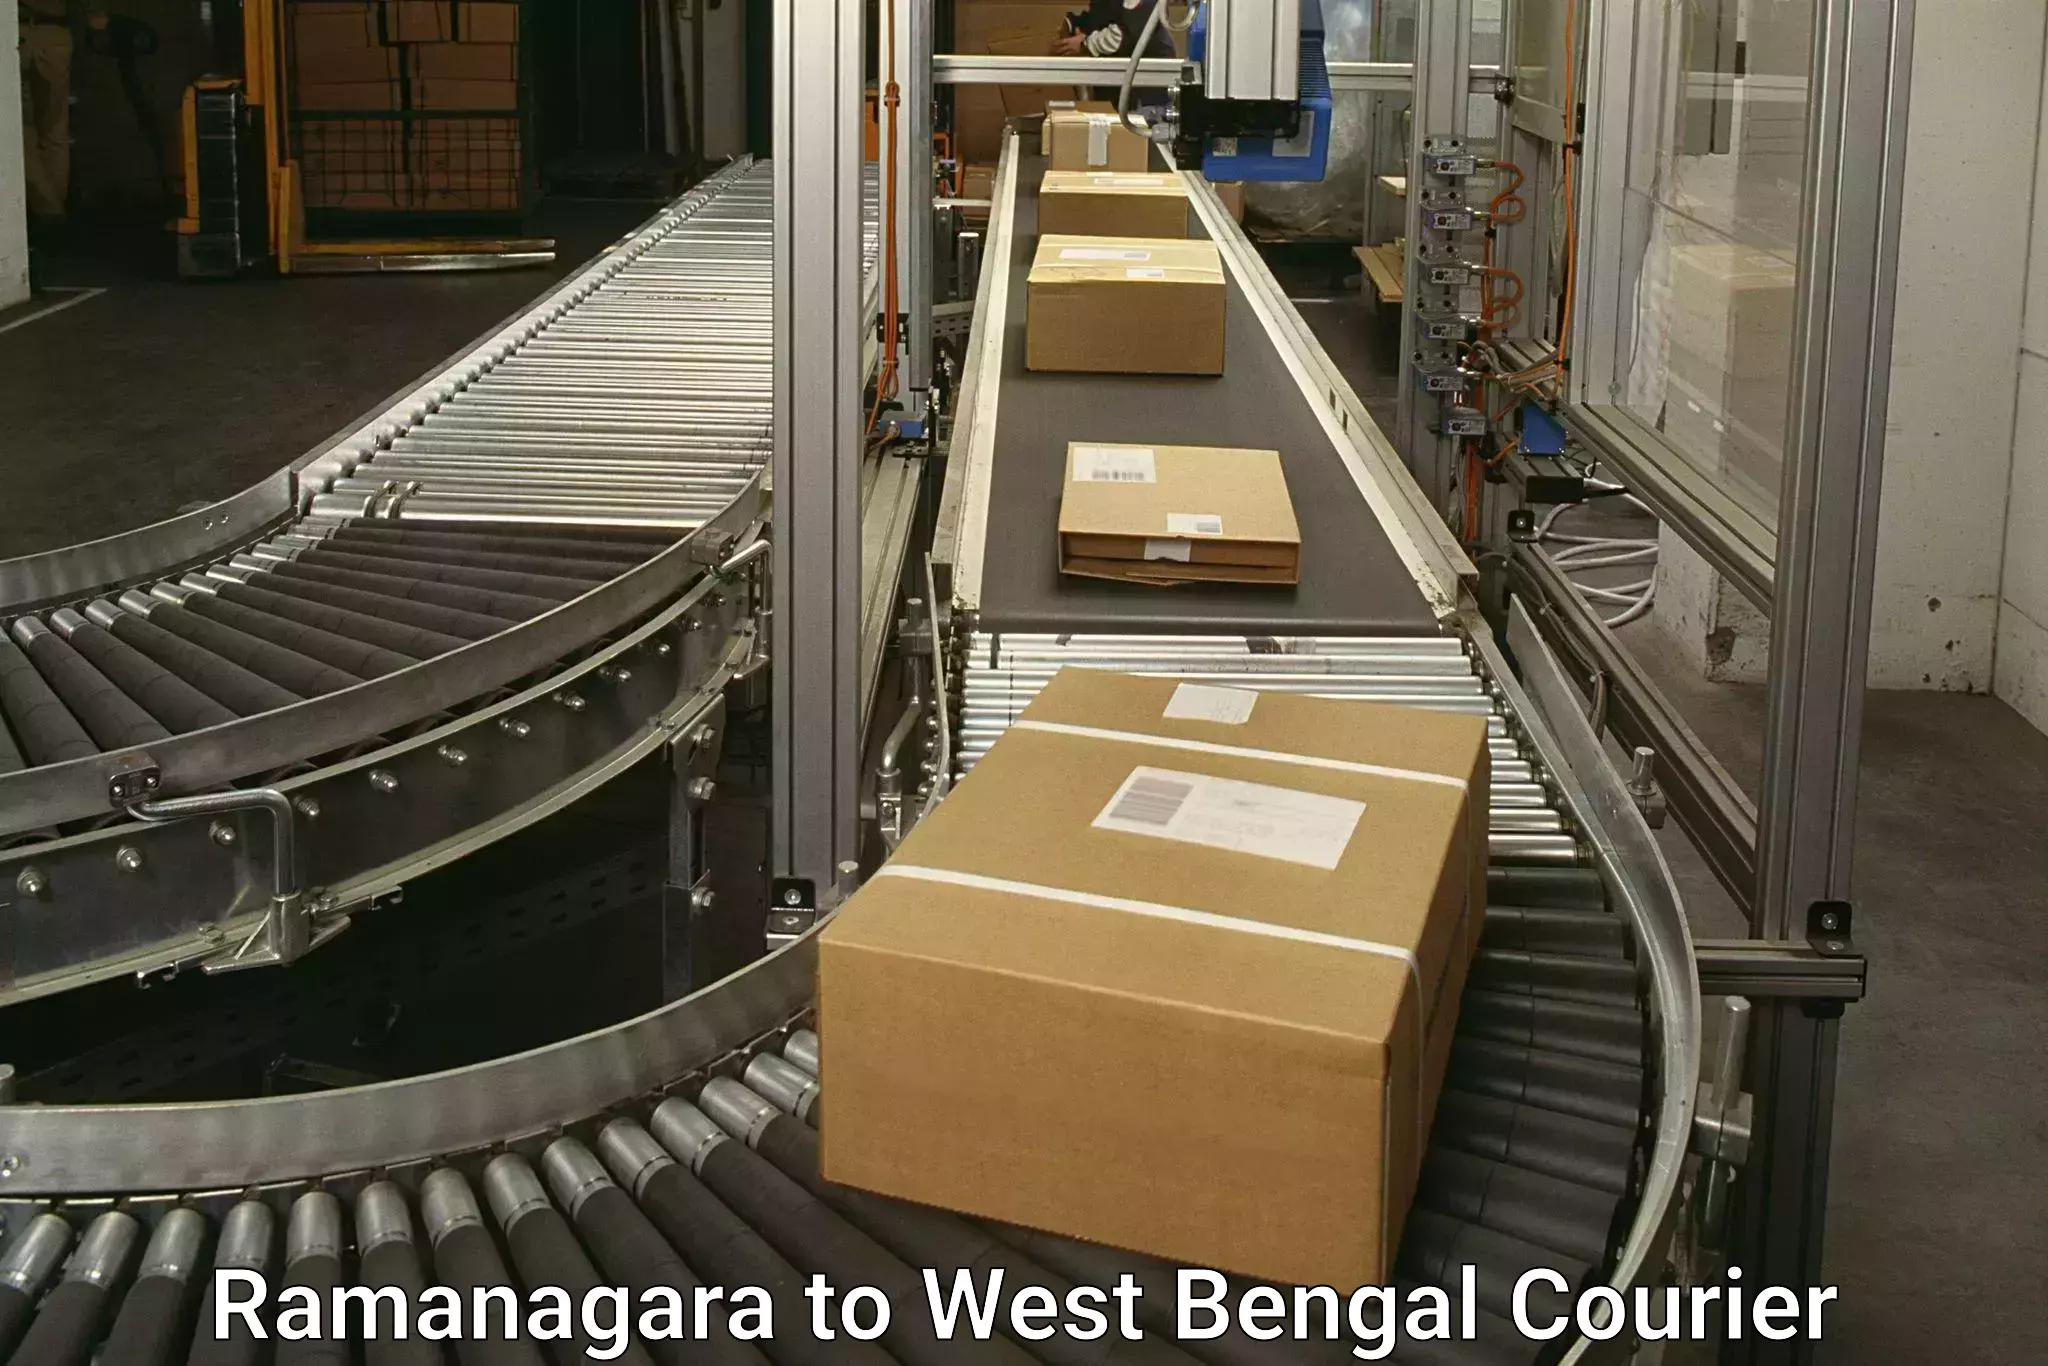 Modern courier technology Ramanagara to Kolkata Port